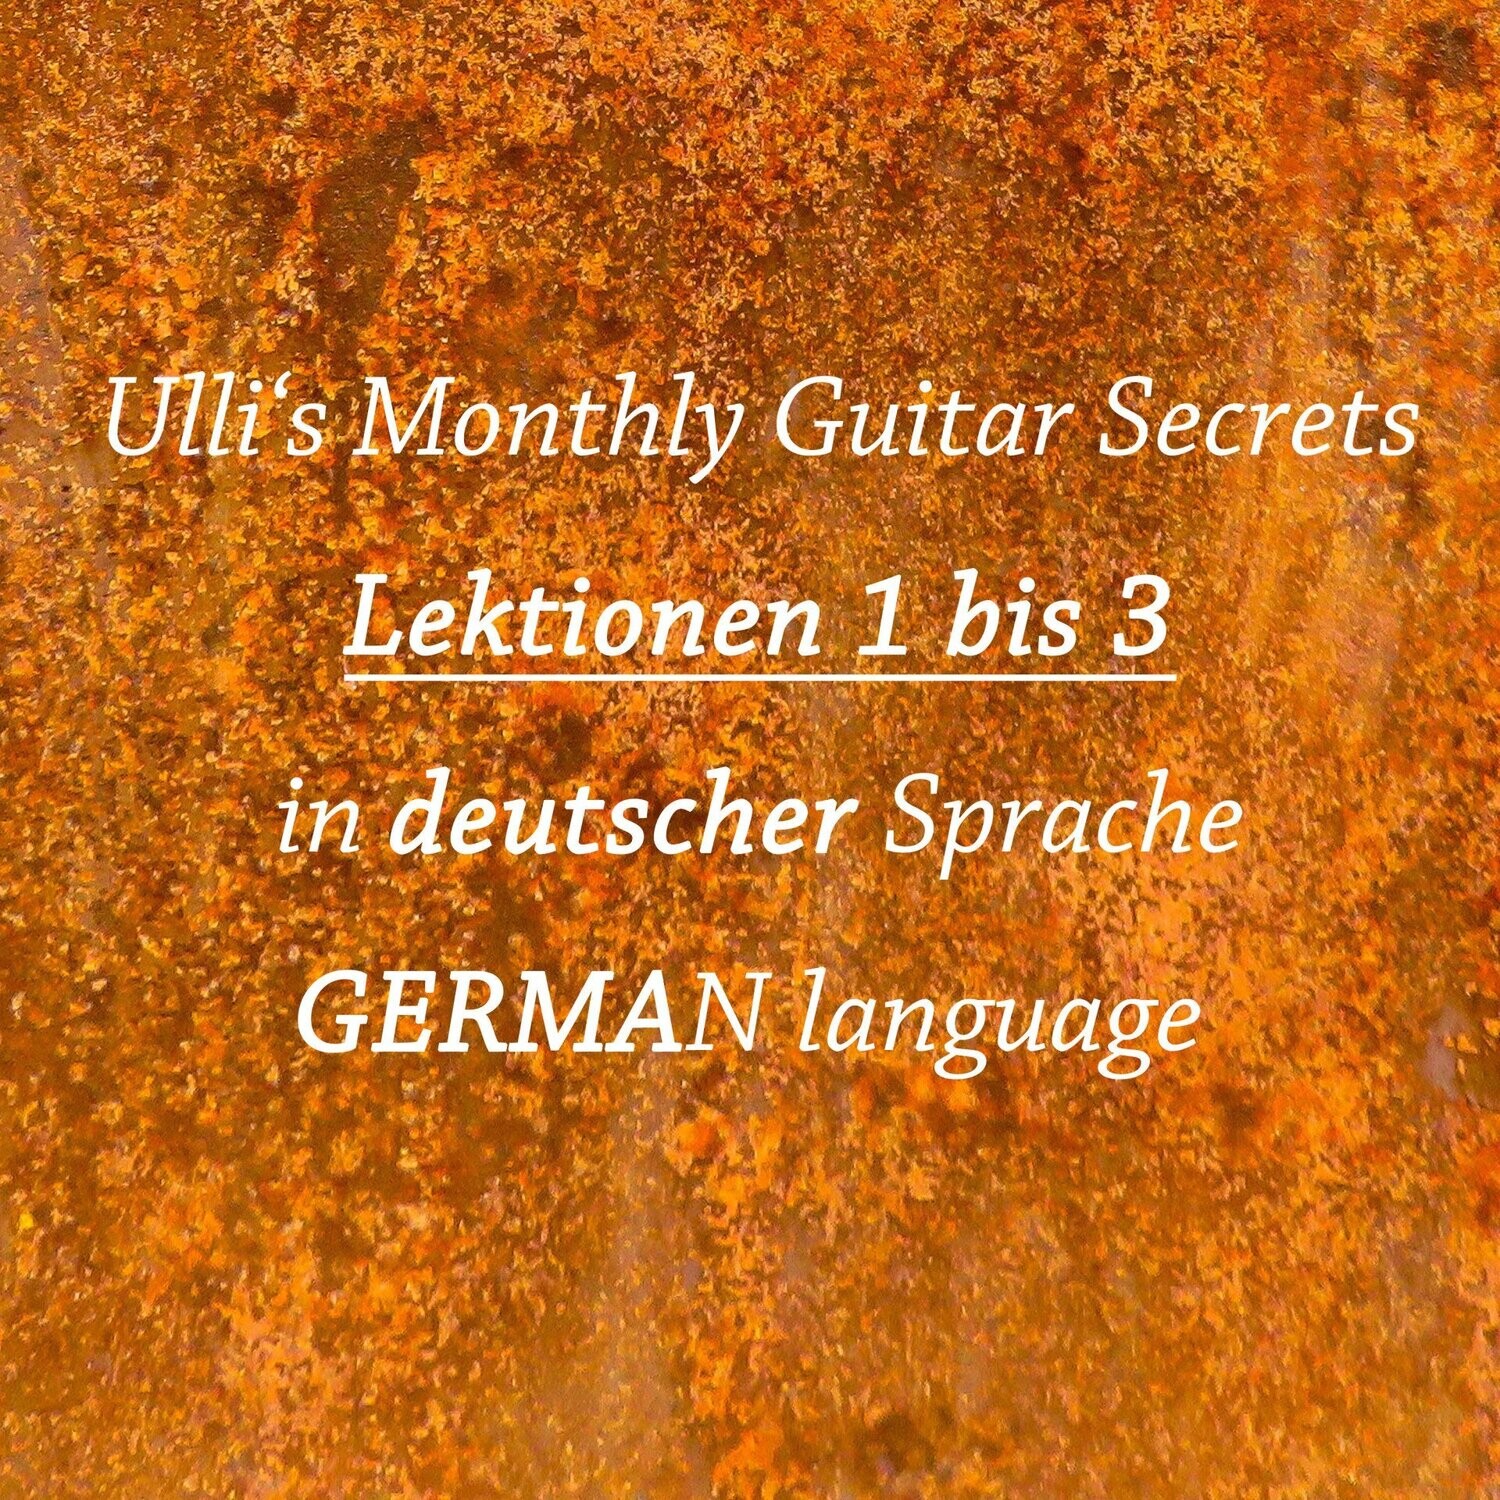 Ulli's Monthly Guitar Secrets - Lektionen 1 bis 3 DEUTSCH! Download Version